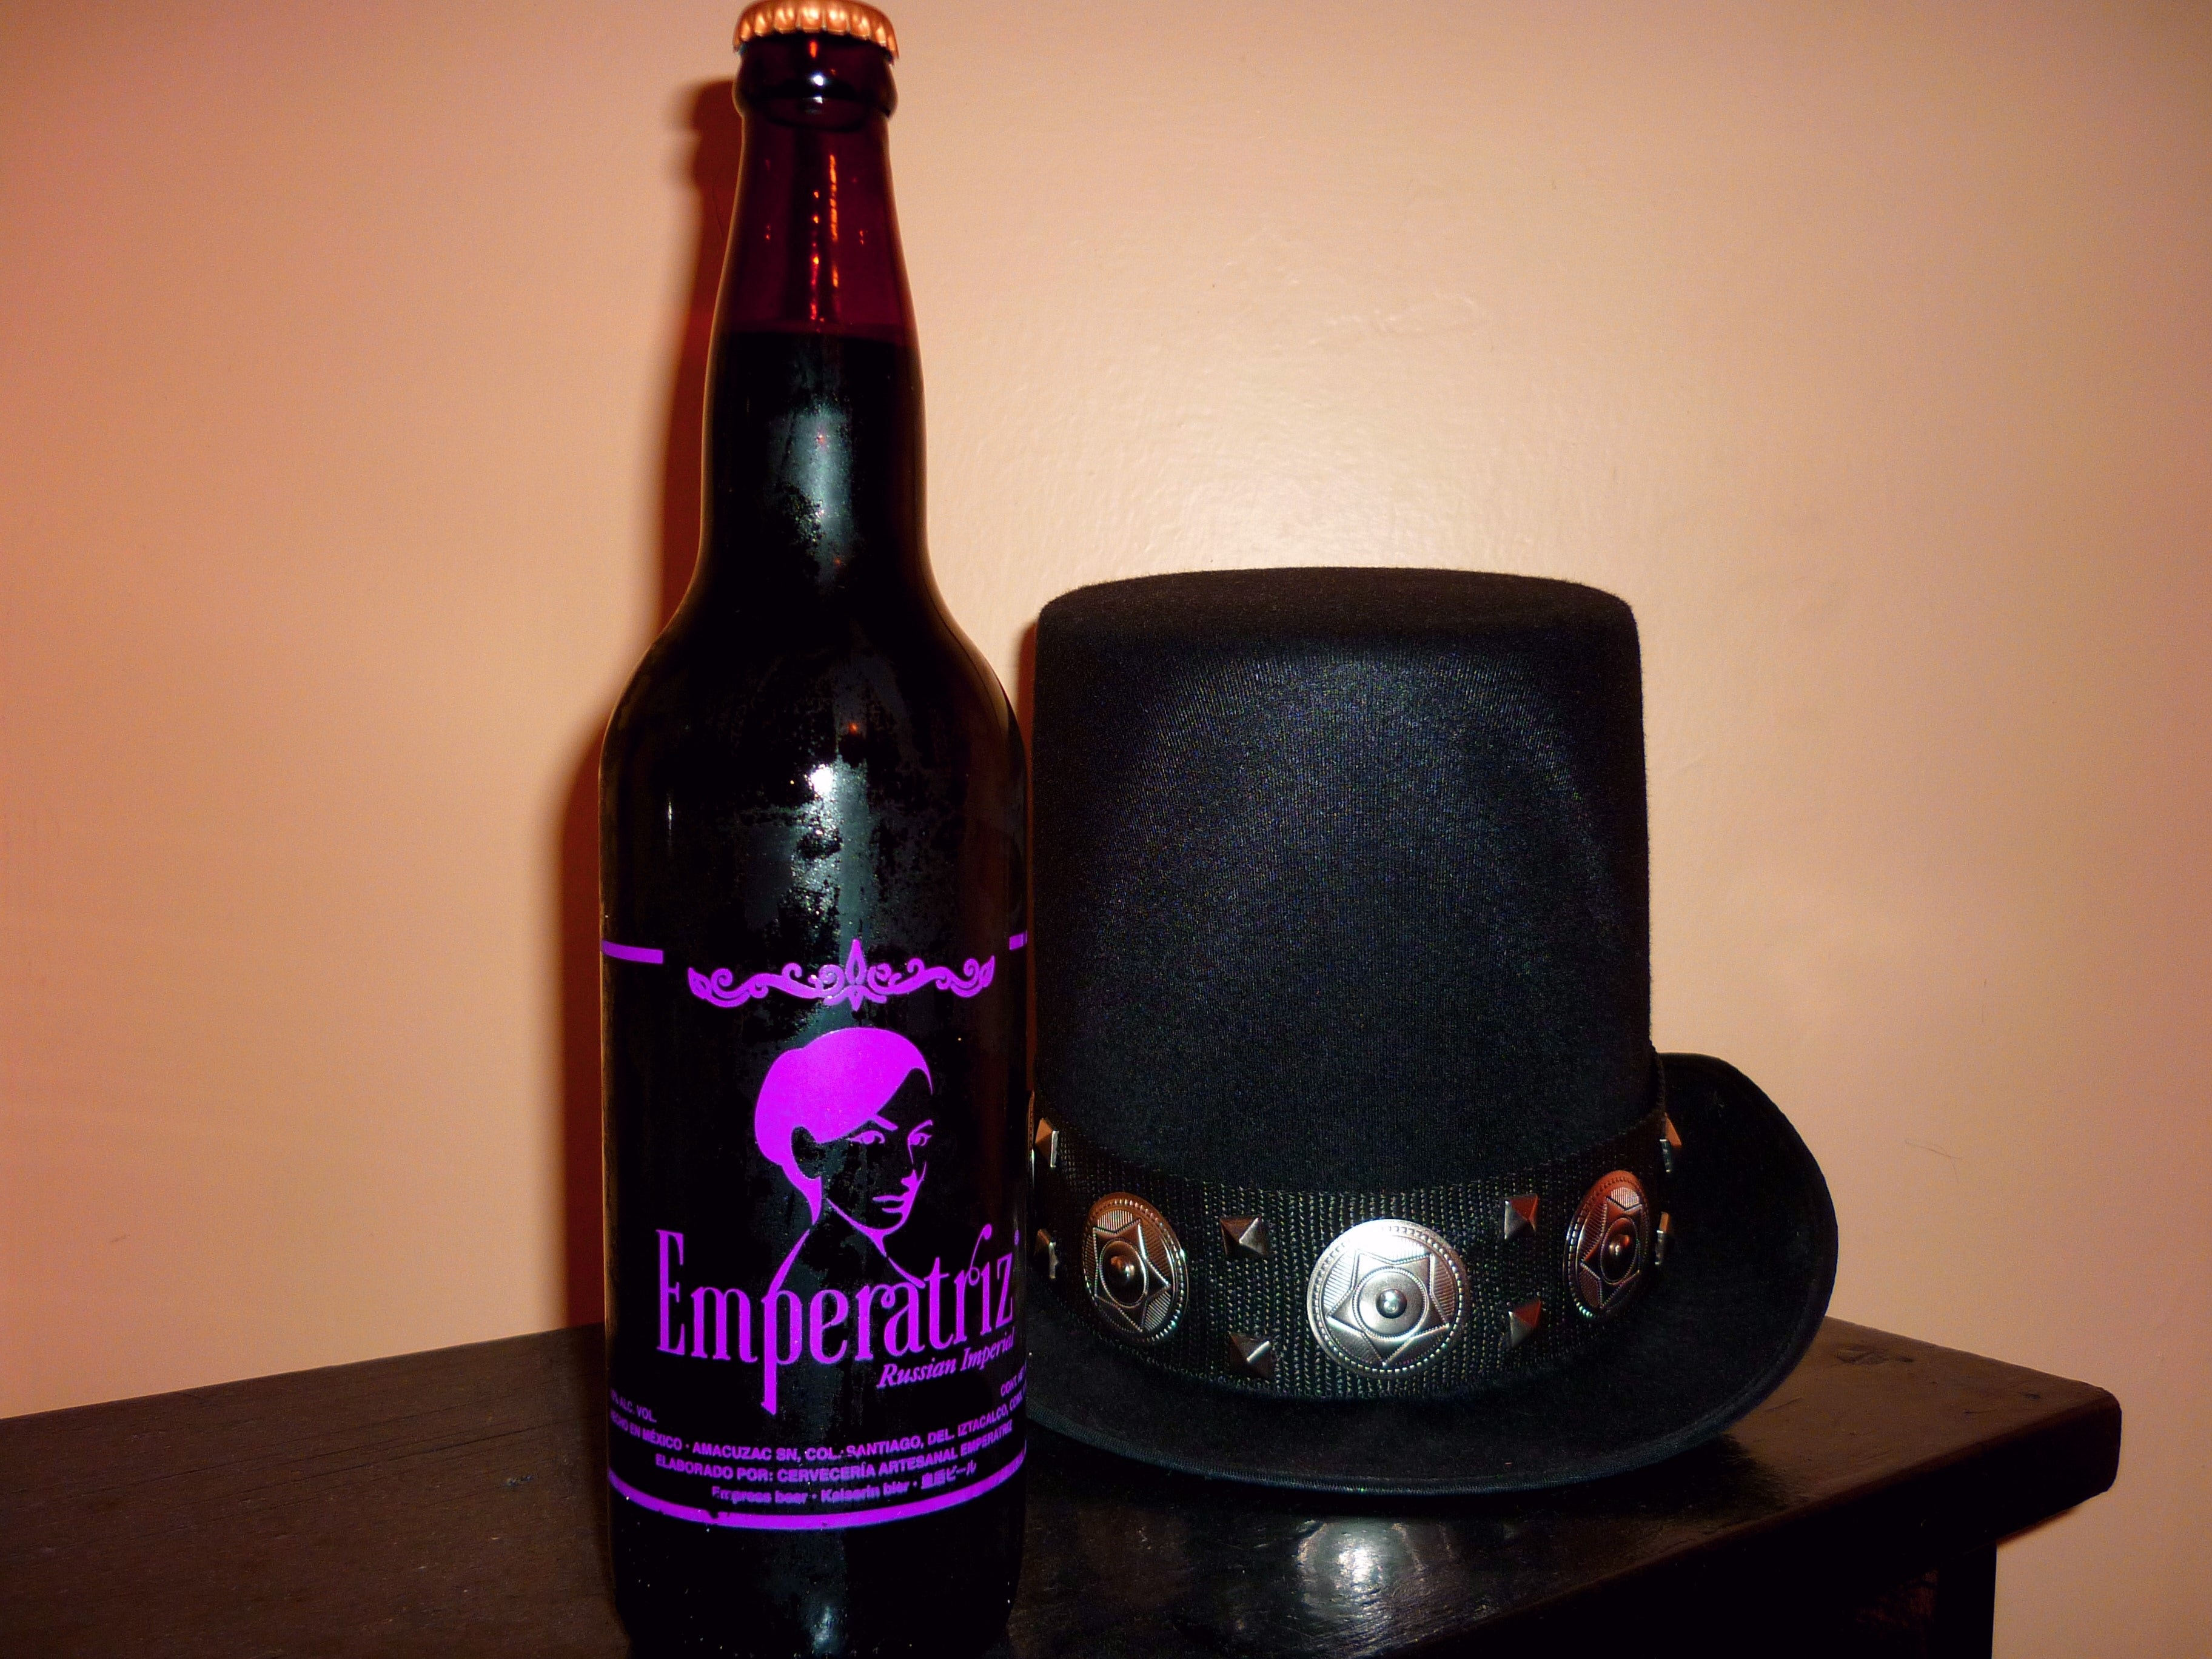 emperatriz bottle and black trilby hat